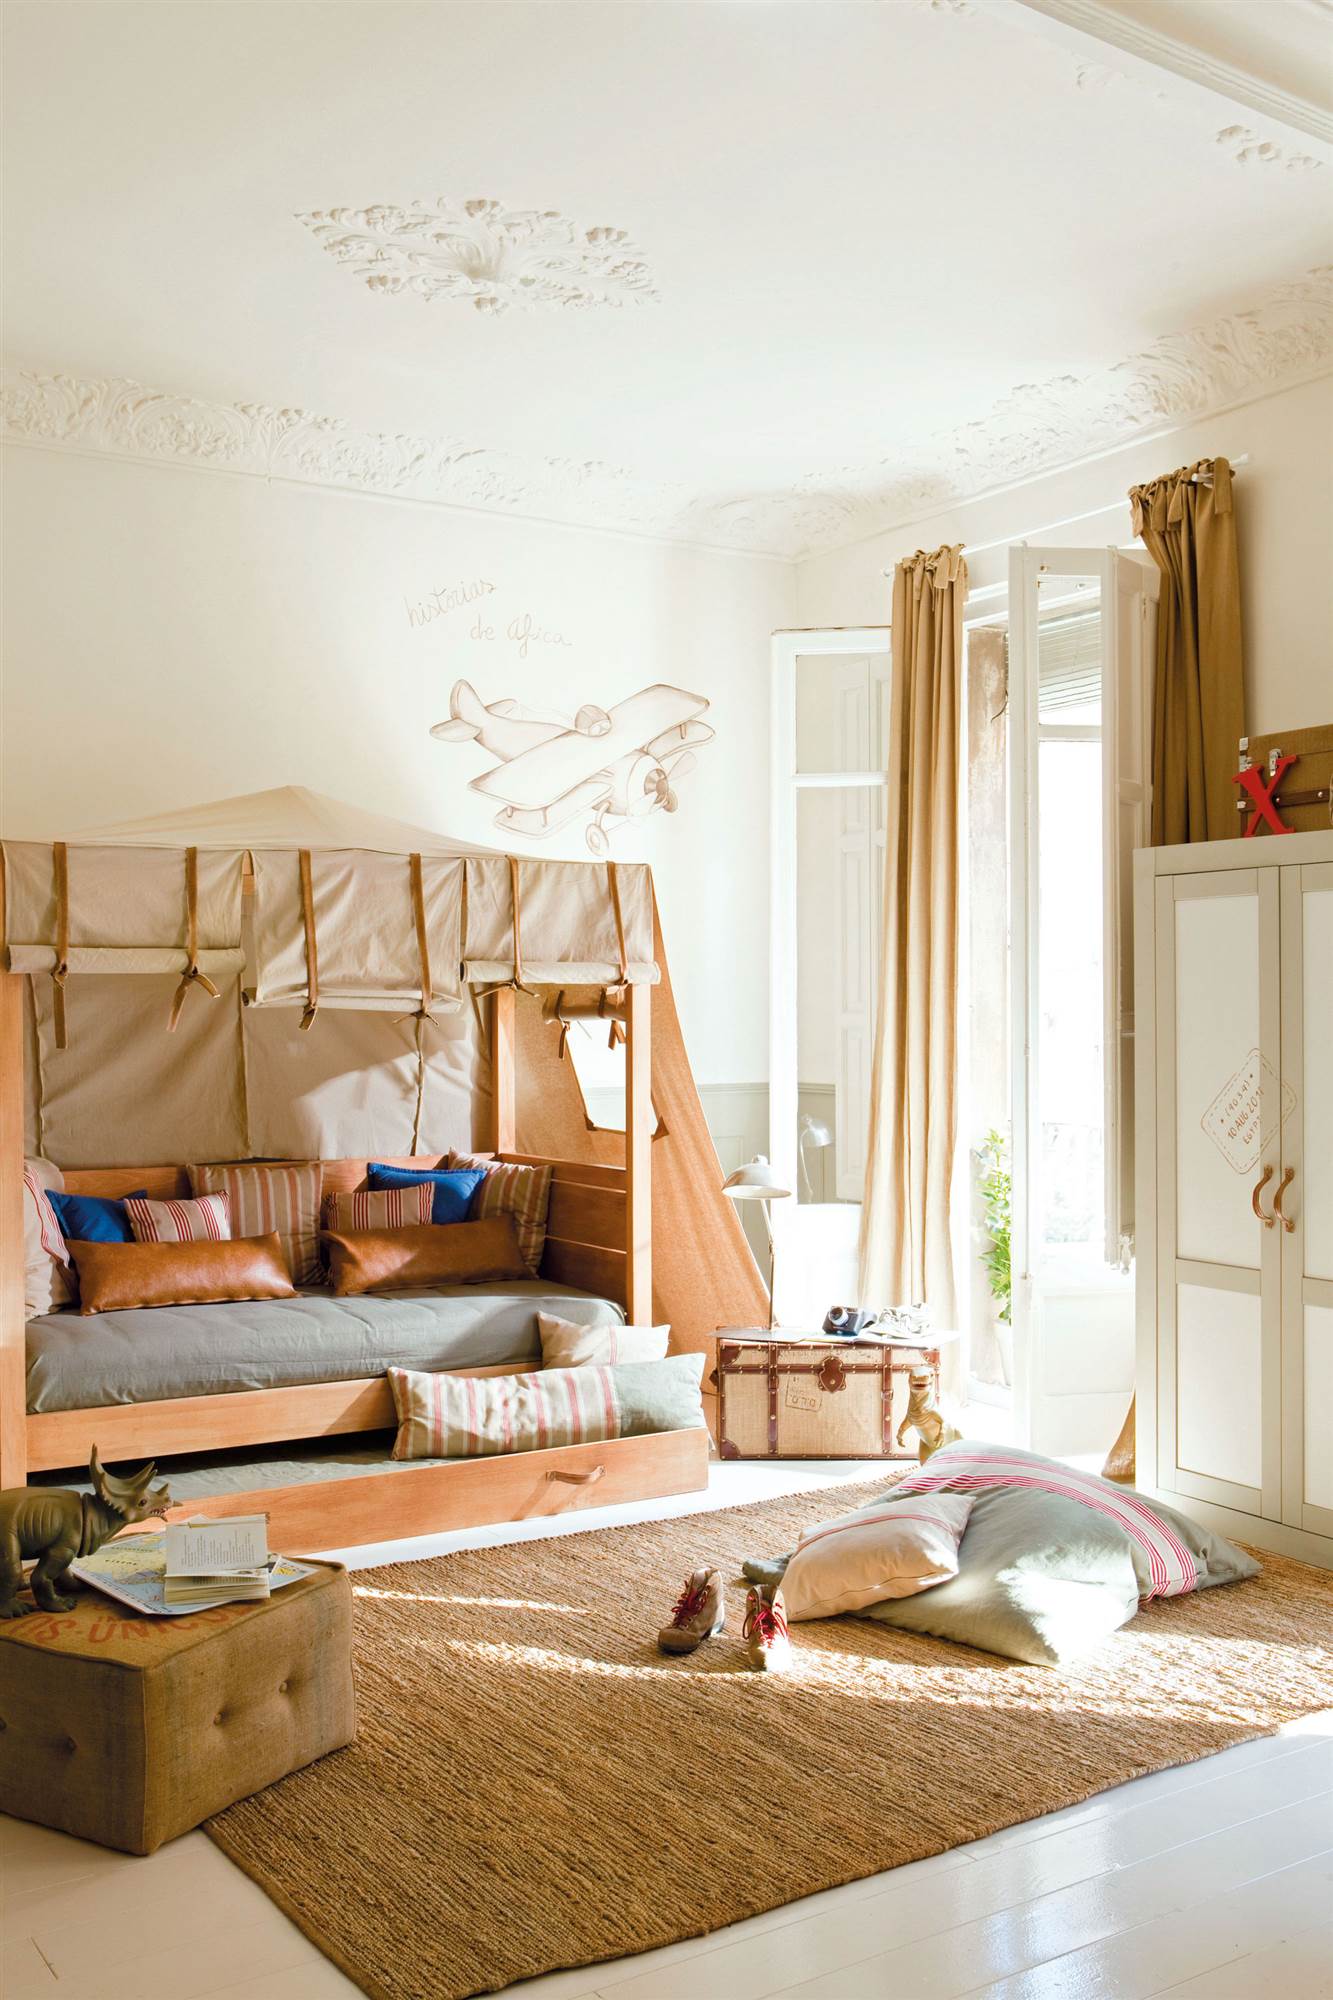 Dormitorio infantil con alfombra de fibras, cama con dosel y cortinas de color mostaza.